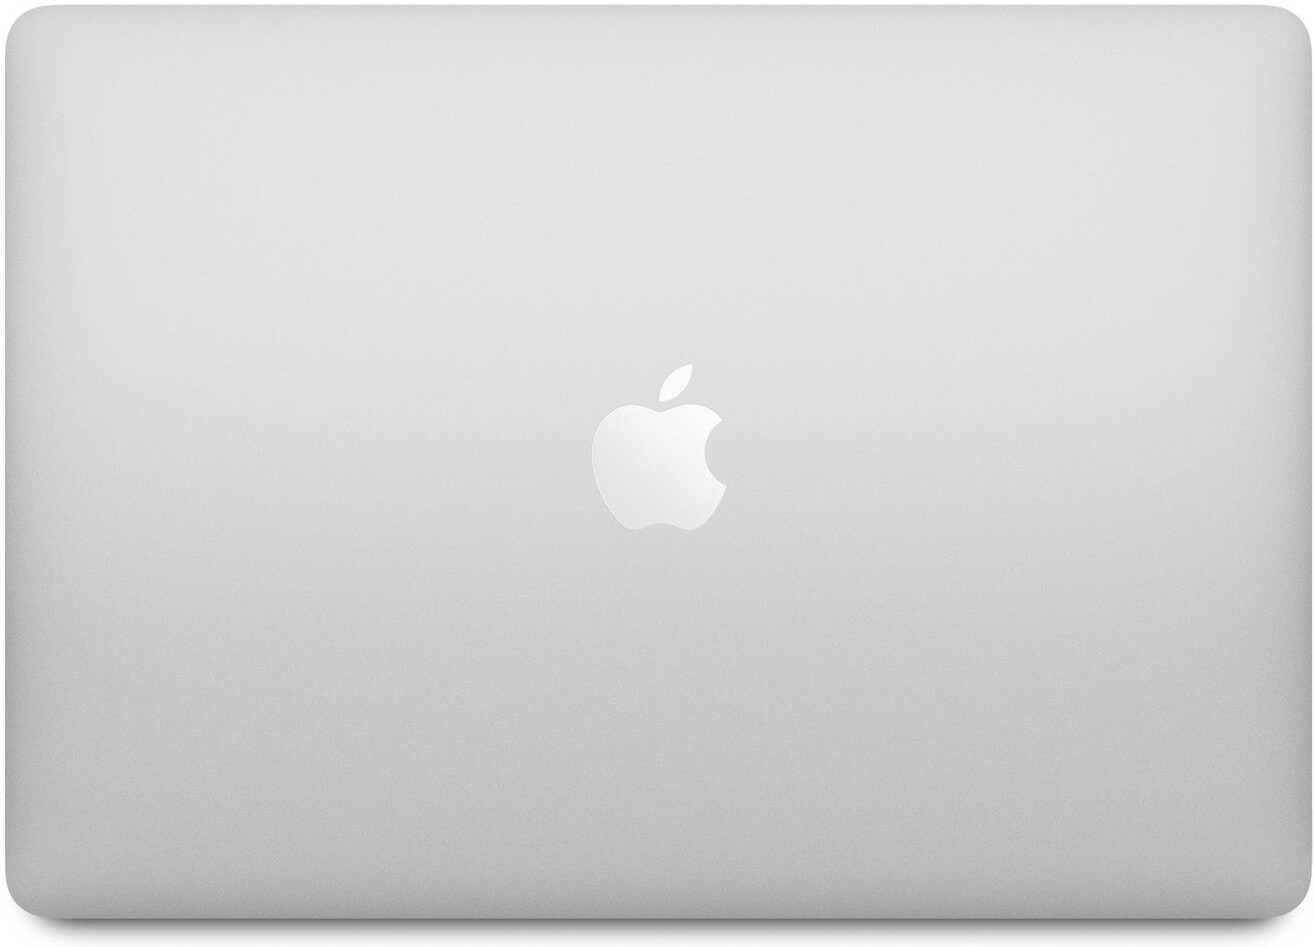 apple macbook air 2020 storage